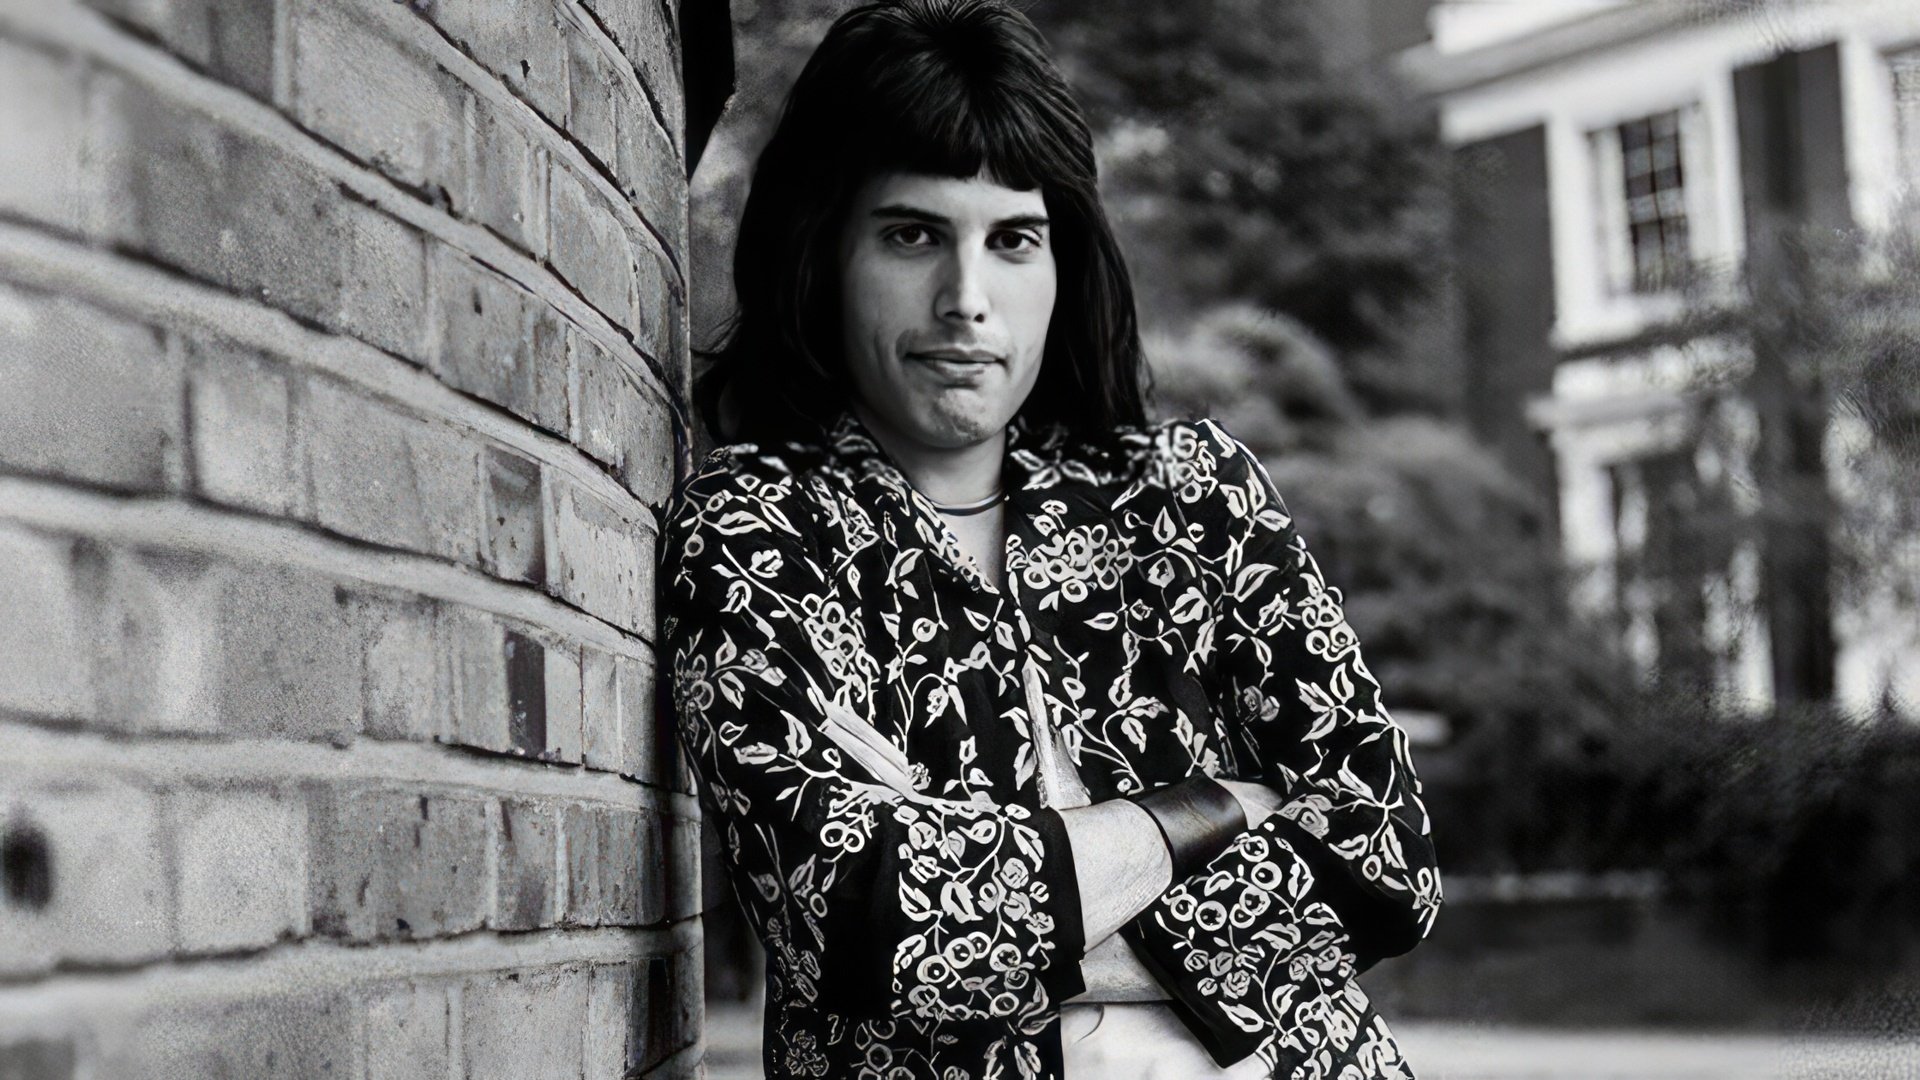 Freddie Mercury in his youth